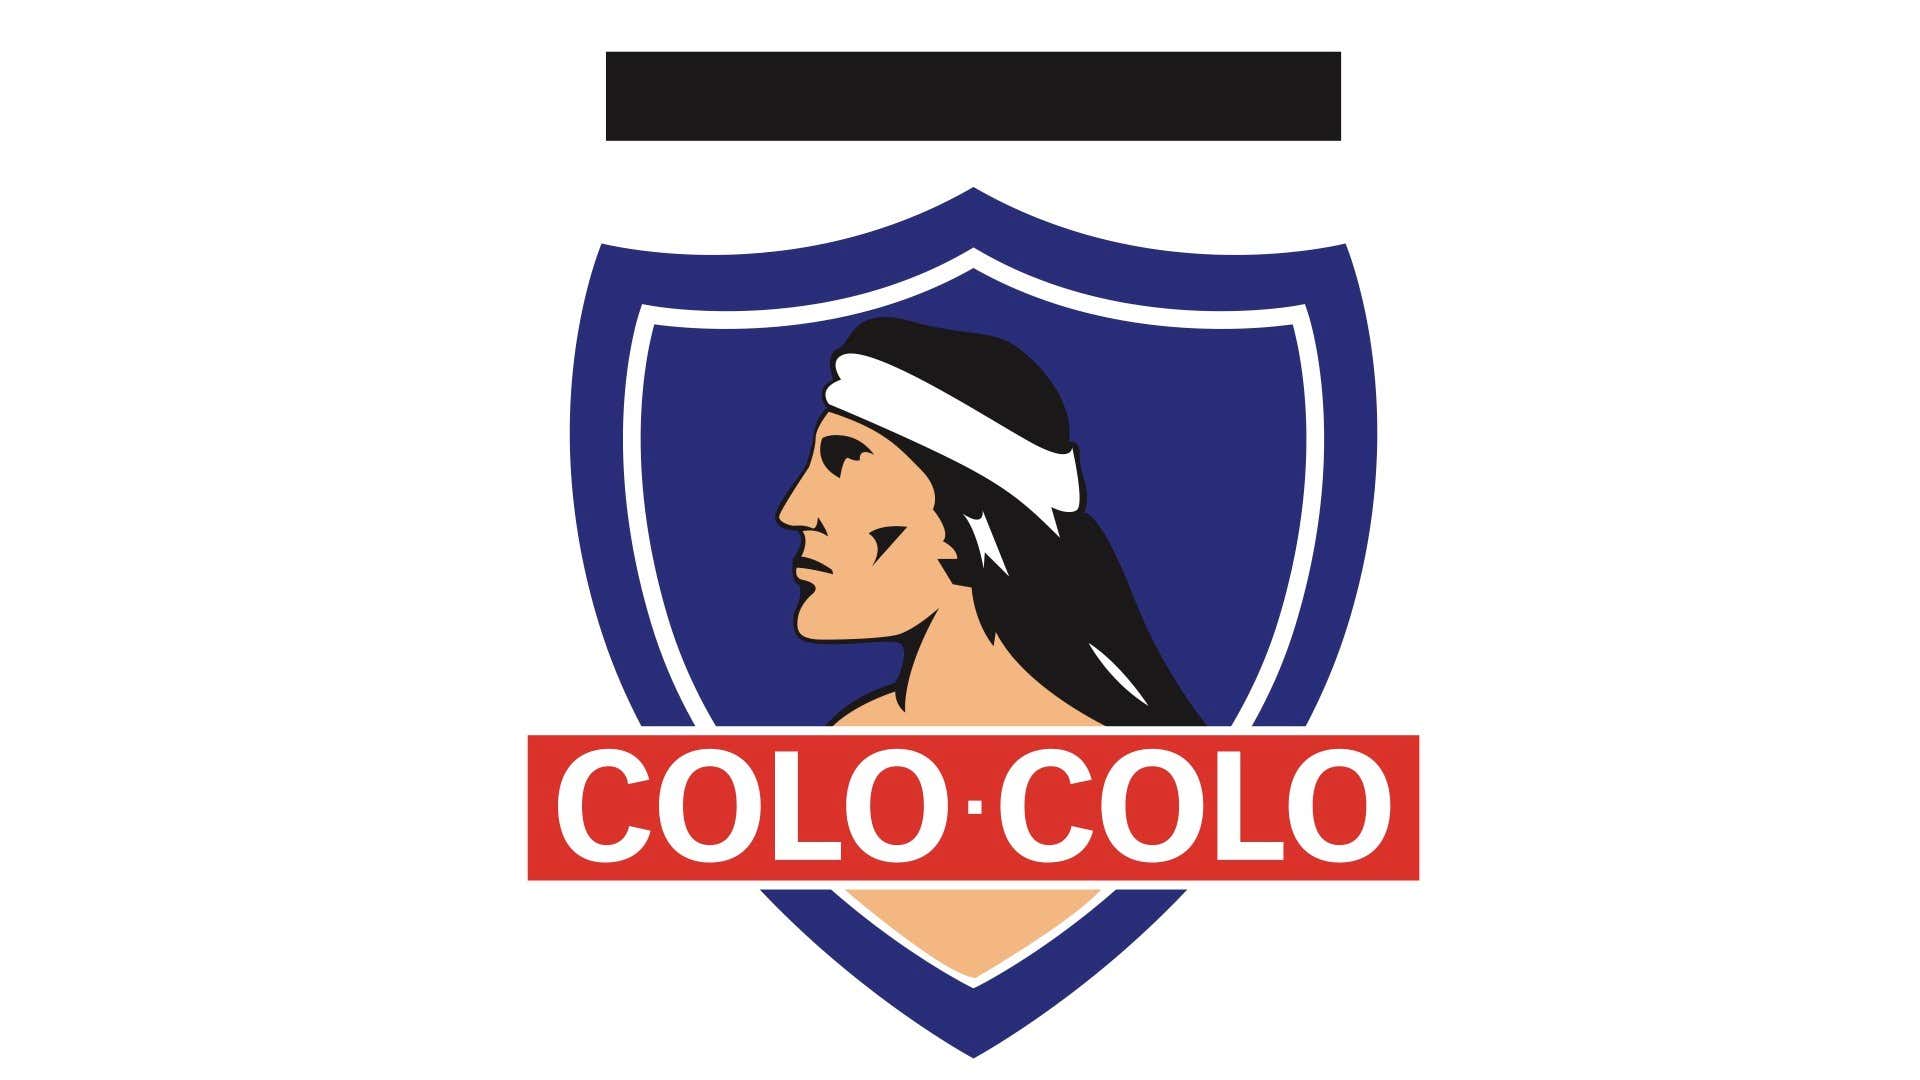 Colo Colo badge